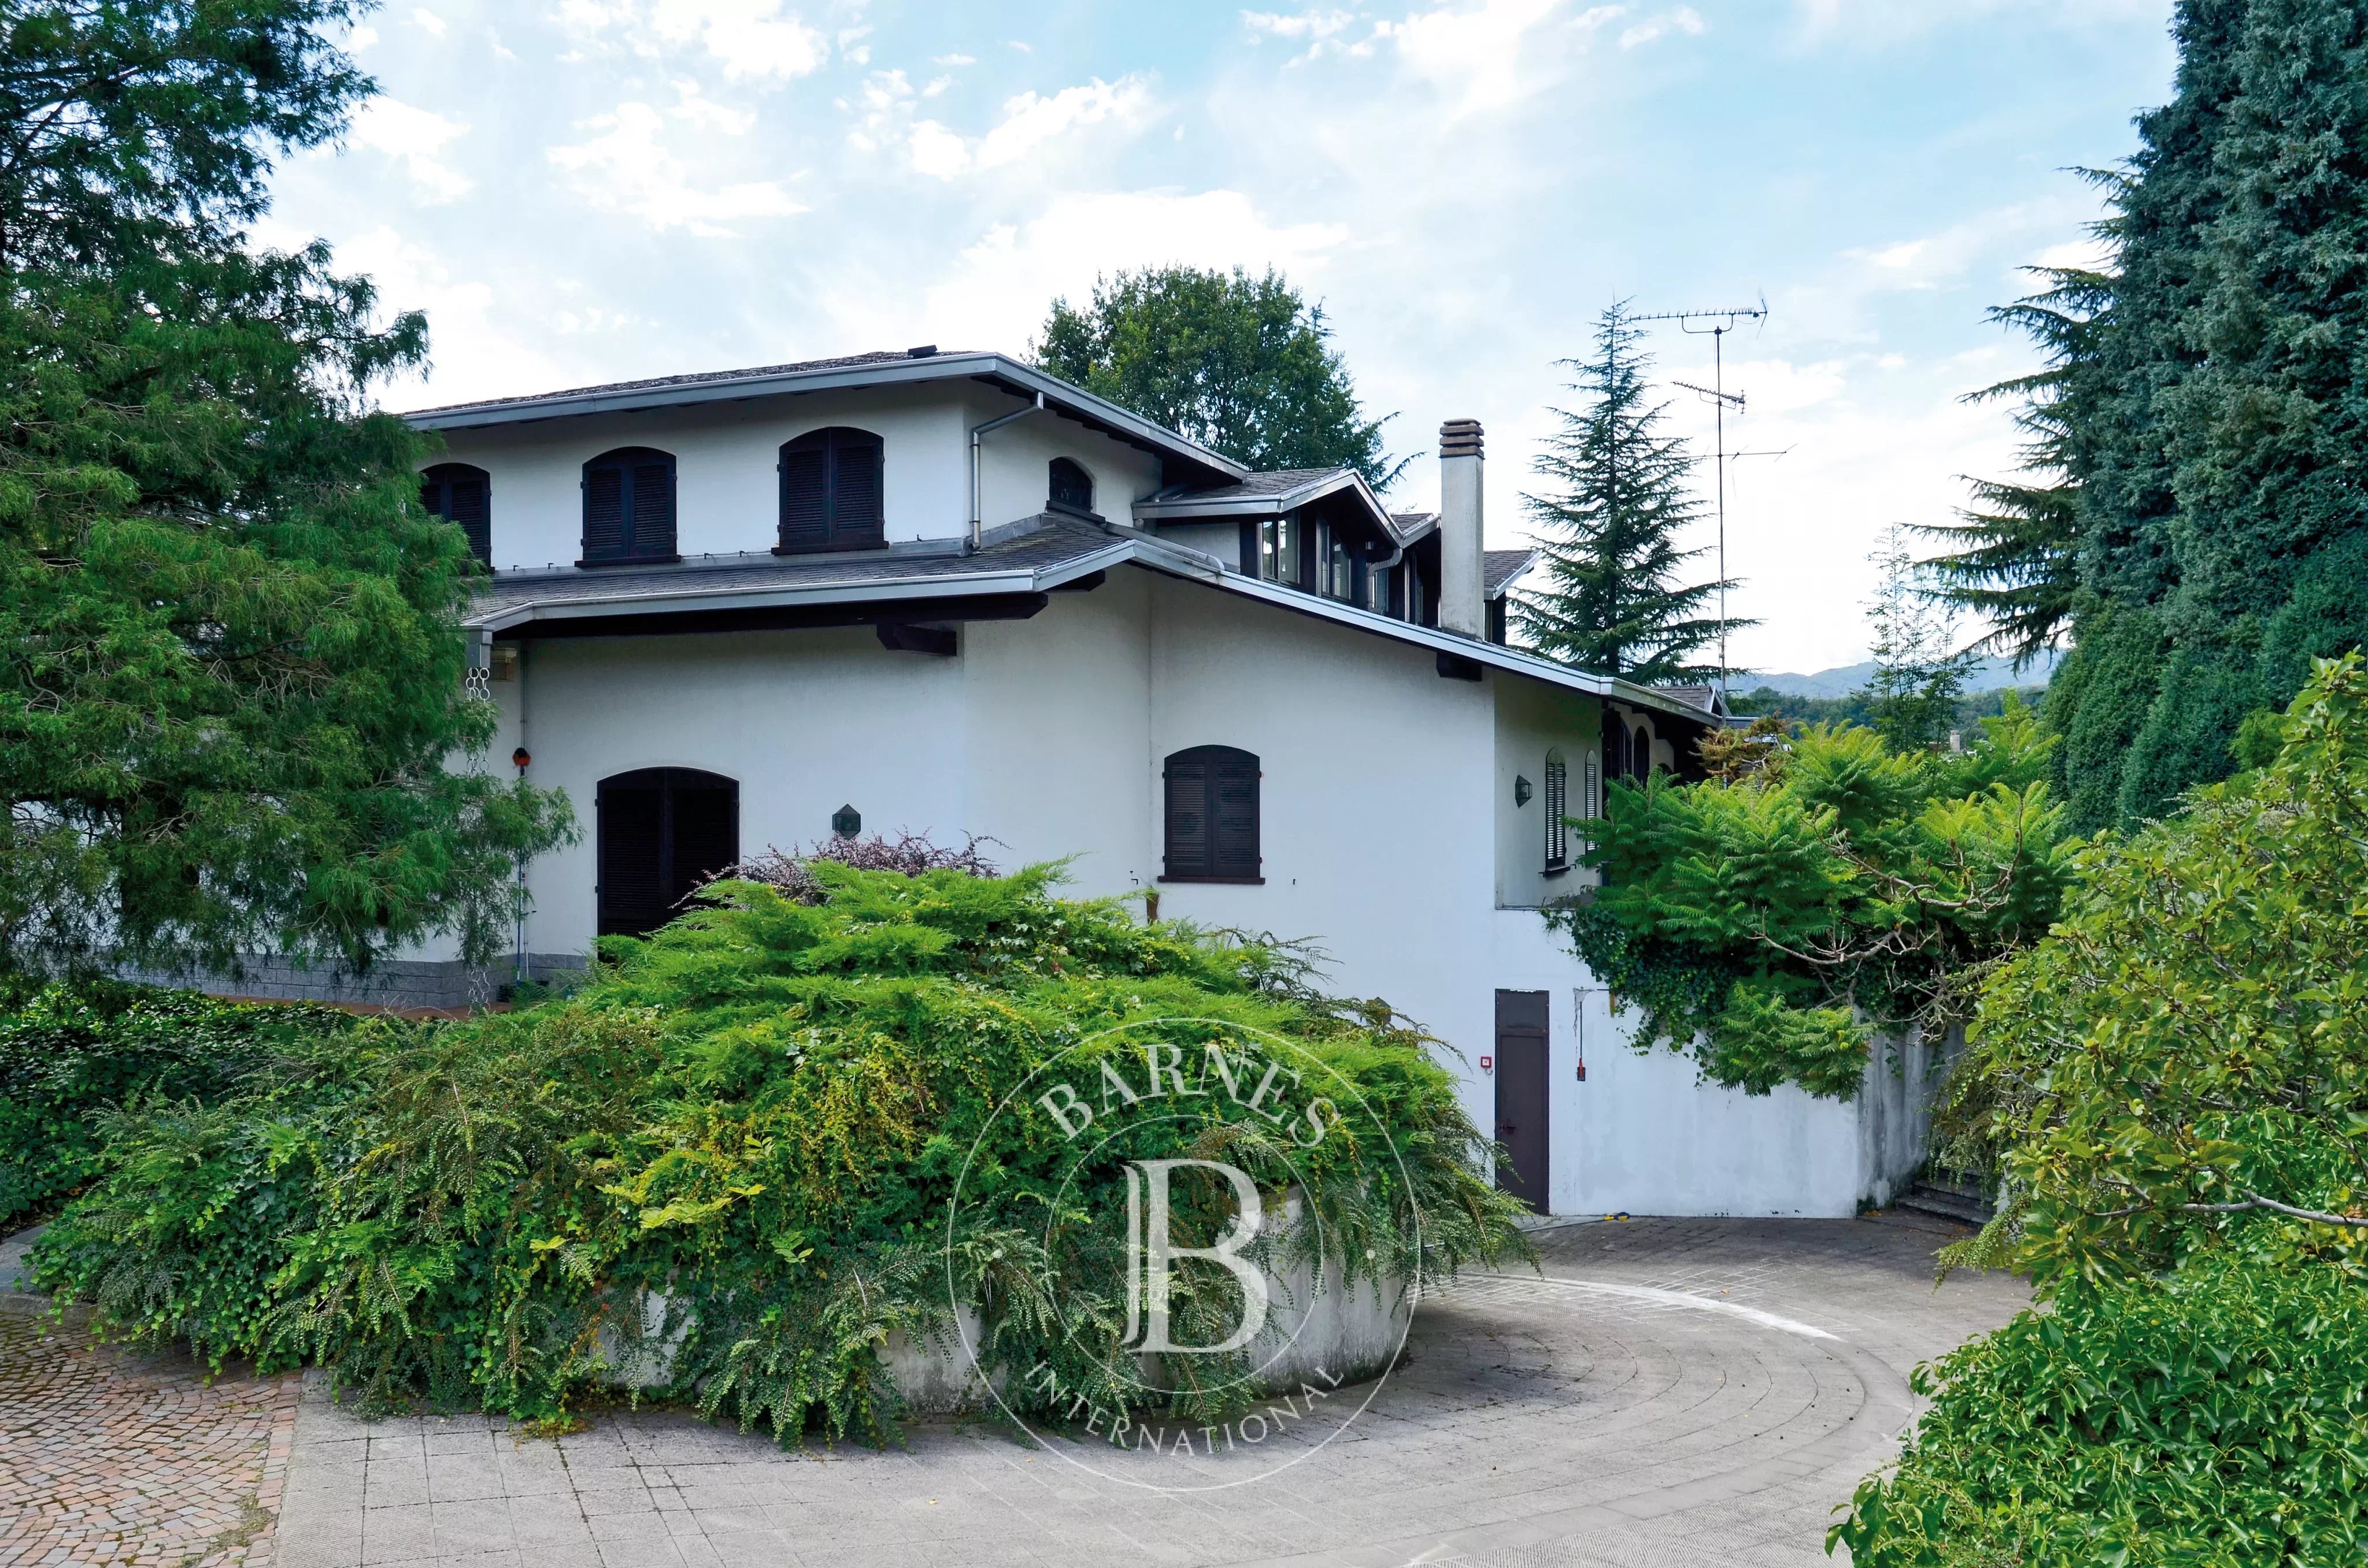 Prestigious villa with indoor pool, stable and park. Borgomanero. Area Lakes: Maggiore and d'Orta - picture 3 title=